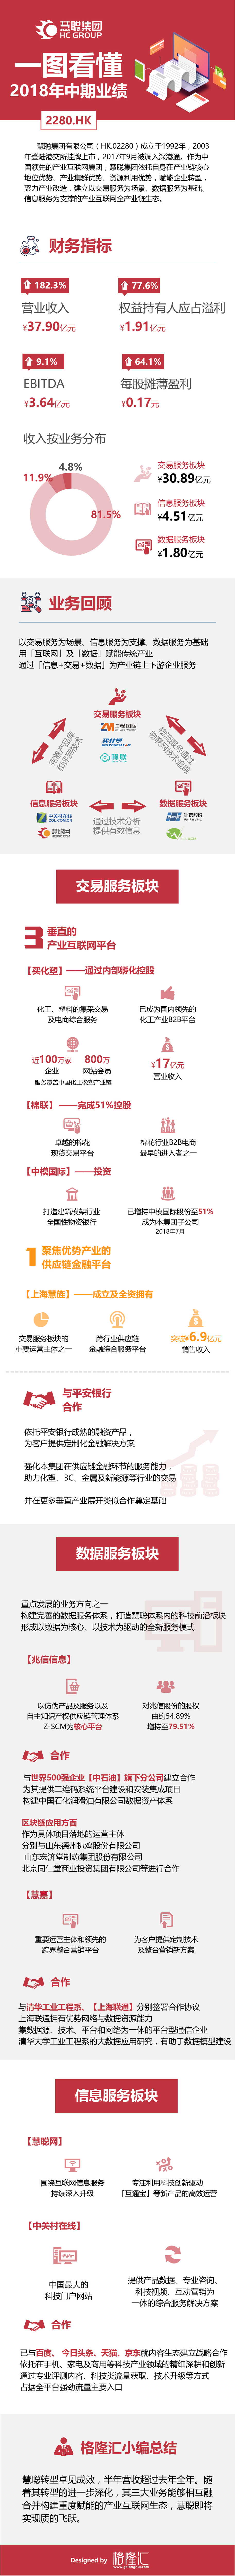 一图看懂慧聪集团2280.HK2018年中期业绩